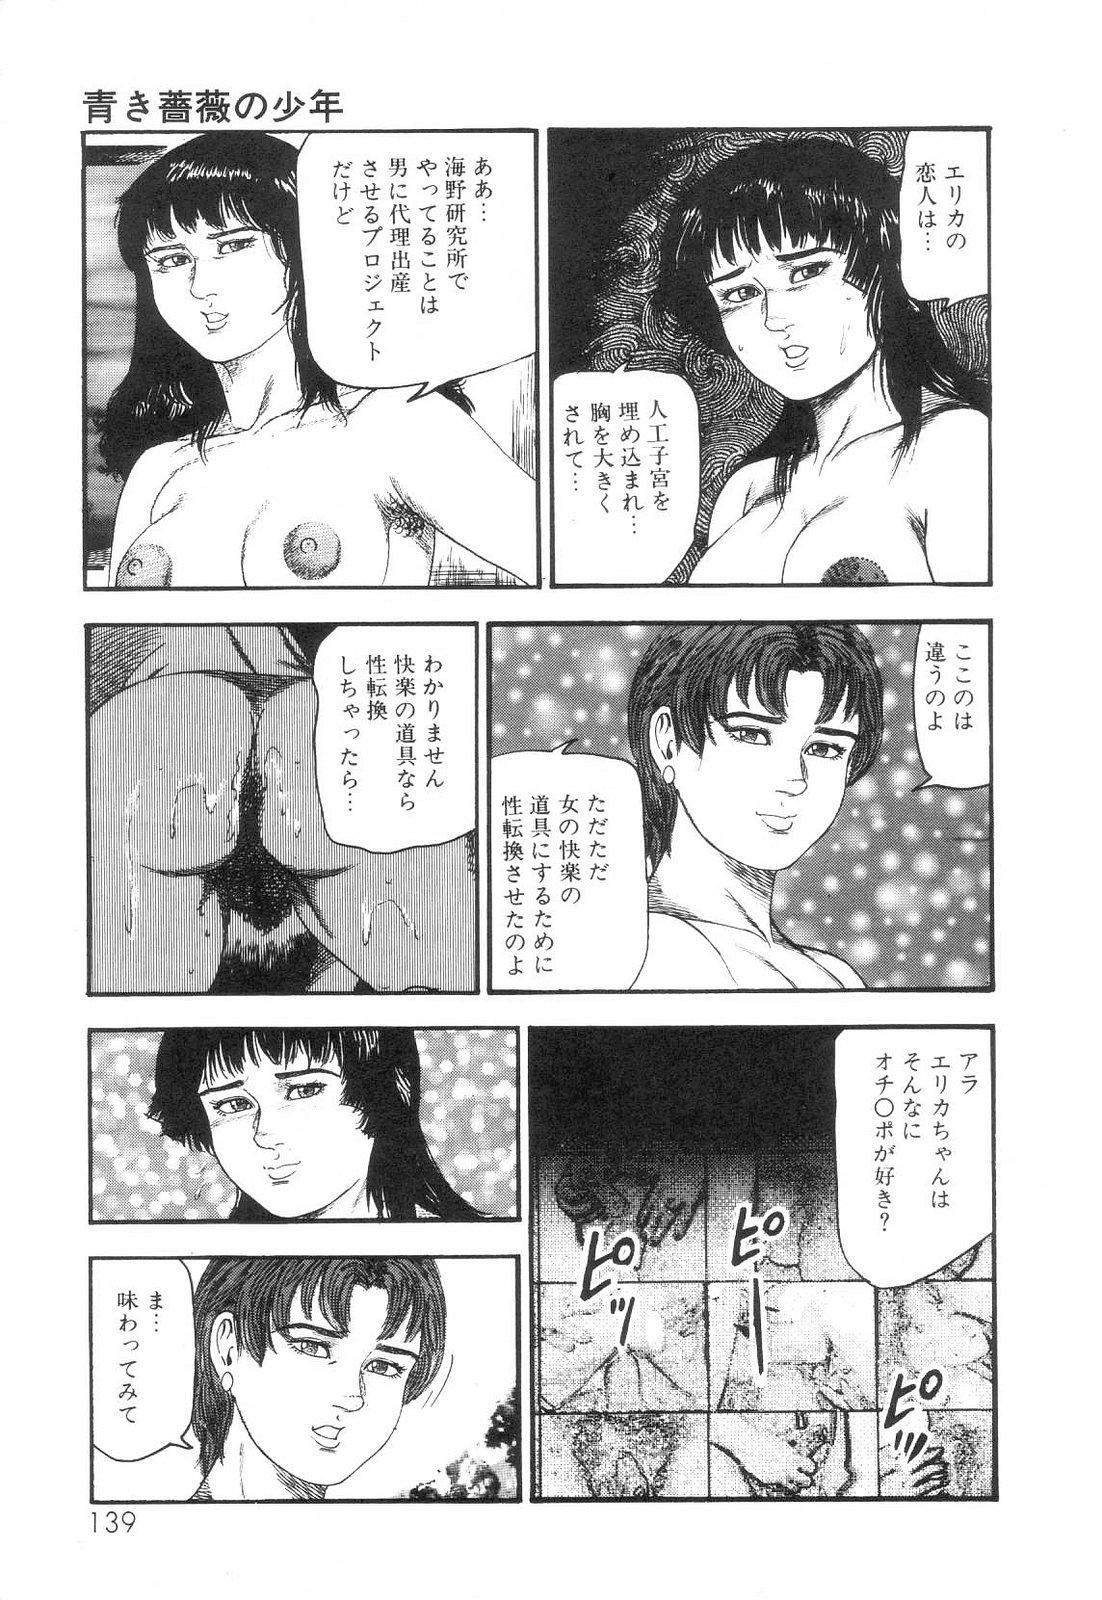 Shiro no Mokushiroku Vol. 6 - Juuai Erika no Shou 141